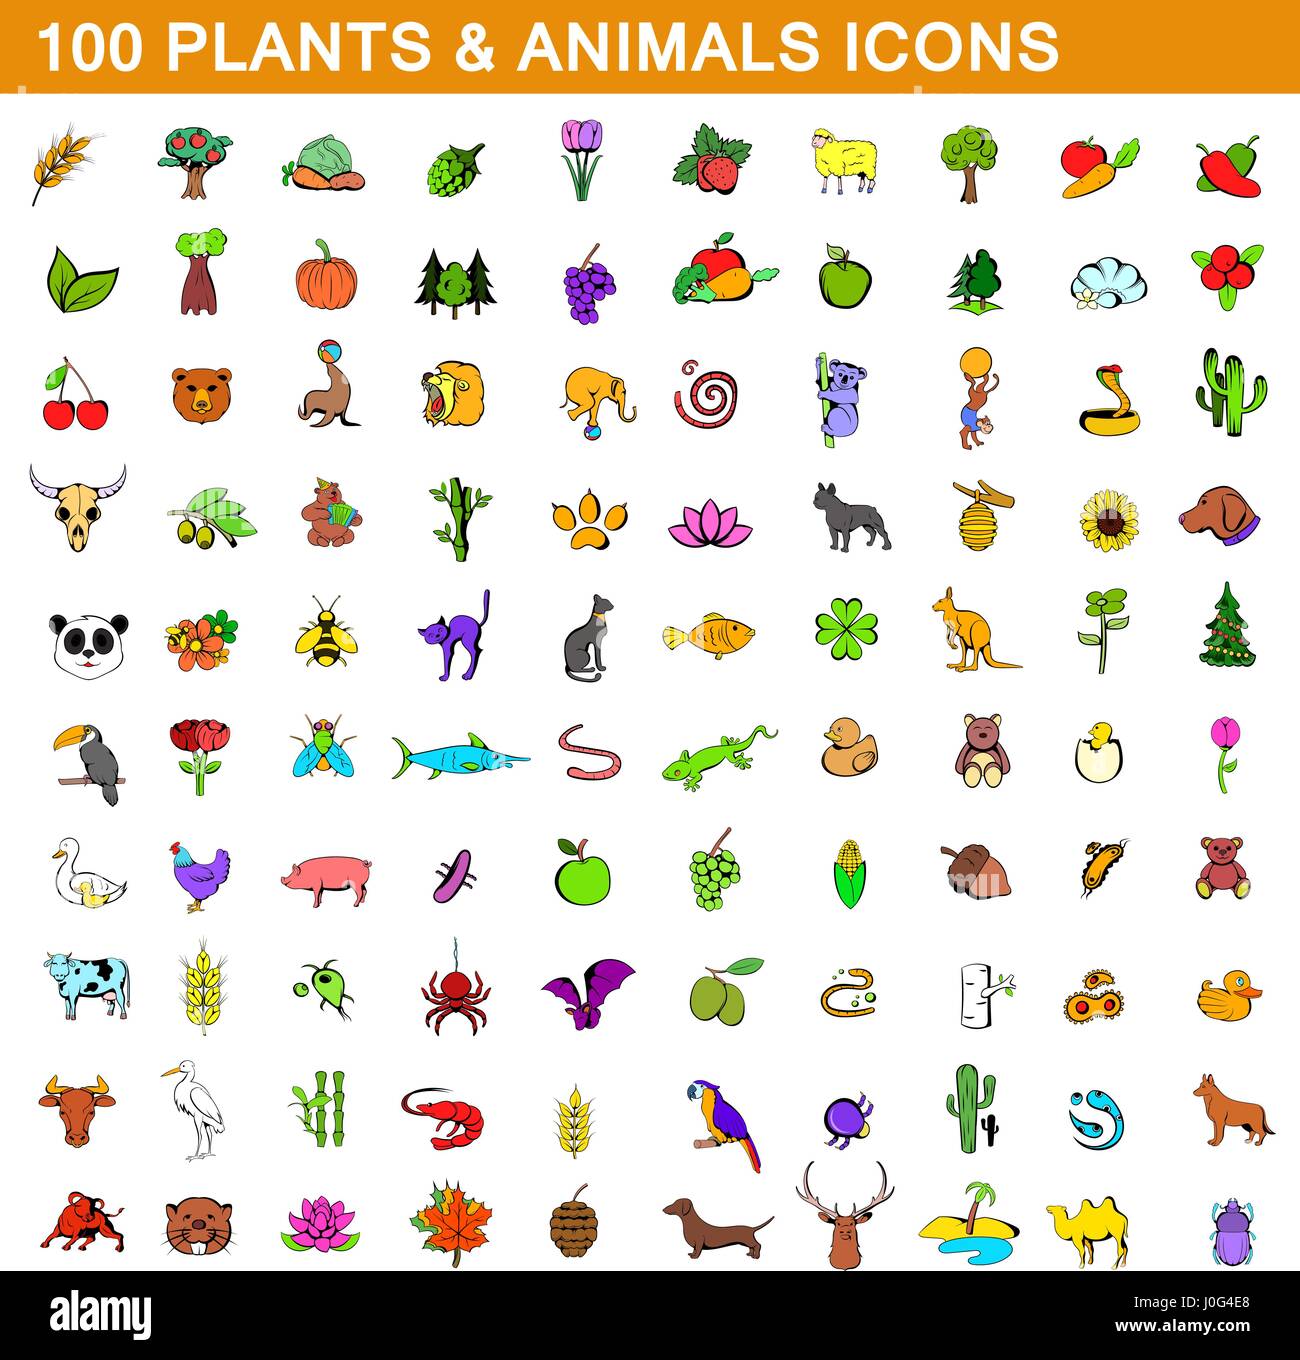 100 plantes et animaux icons set, cartoon style Illustration de Vecteur